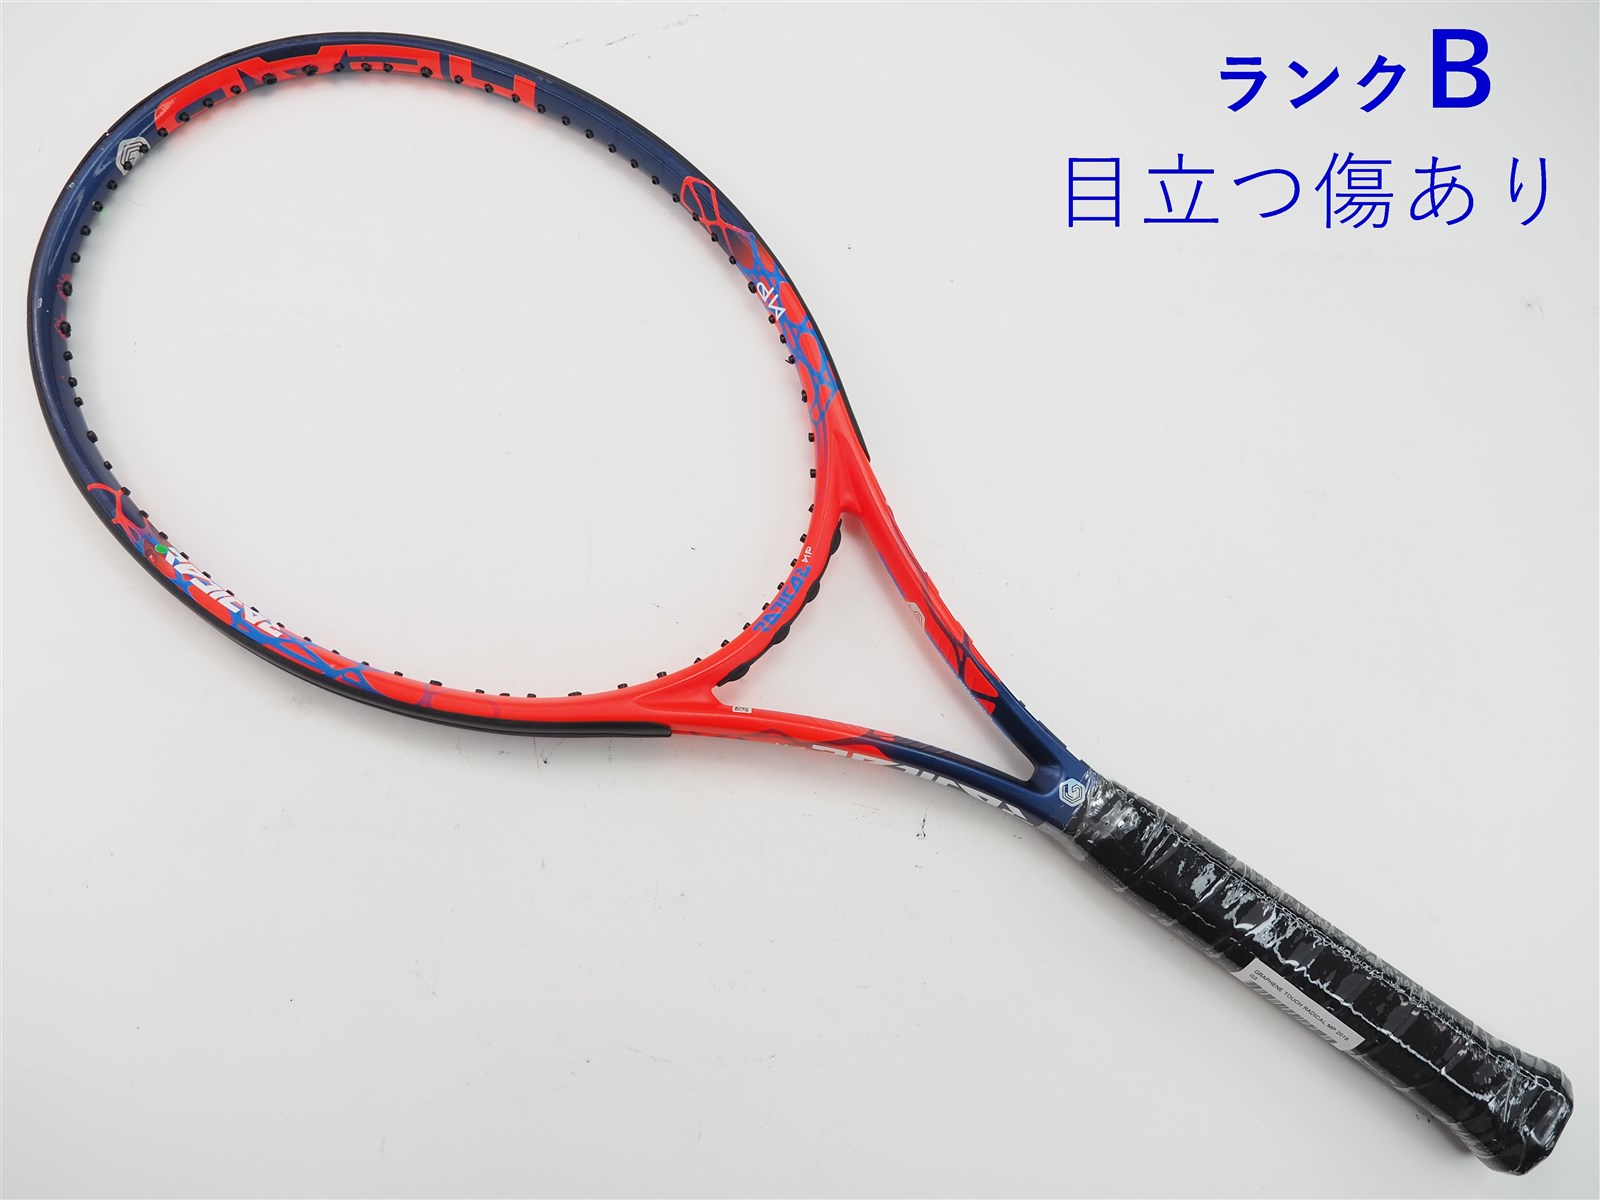 テニスラケット ヘッド グラフィン タッチ ラジカル MP 2018年モデル